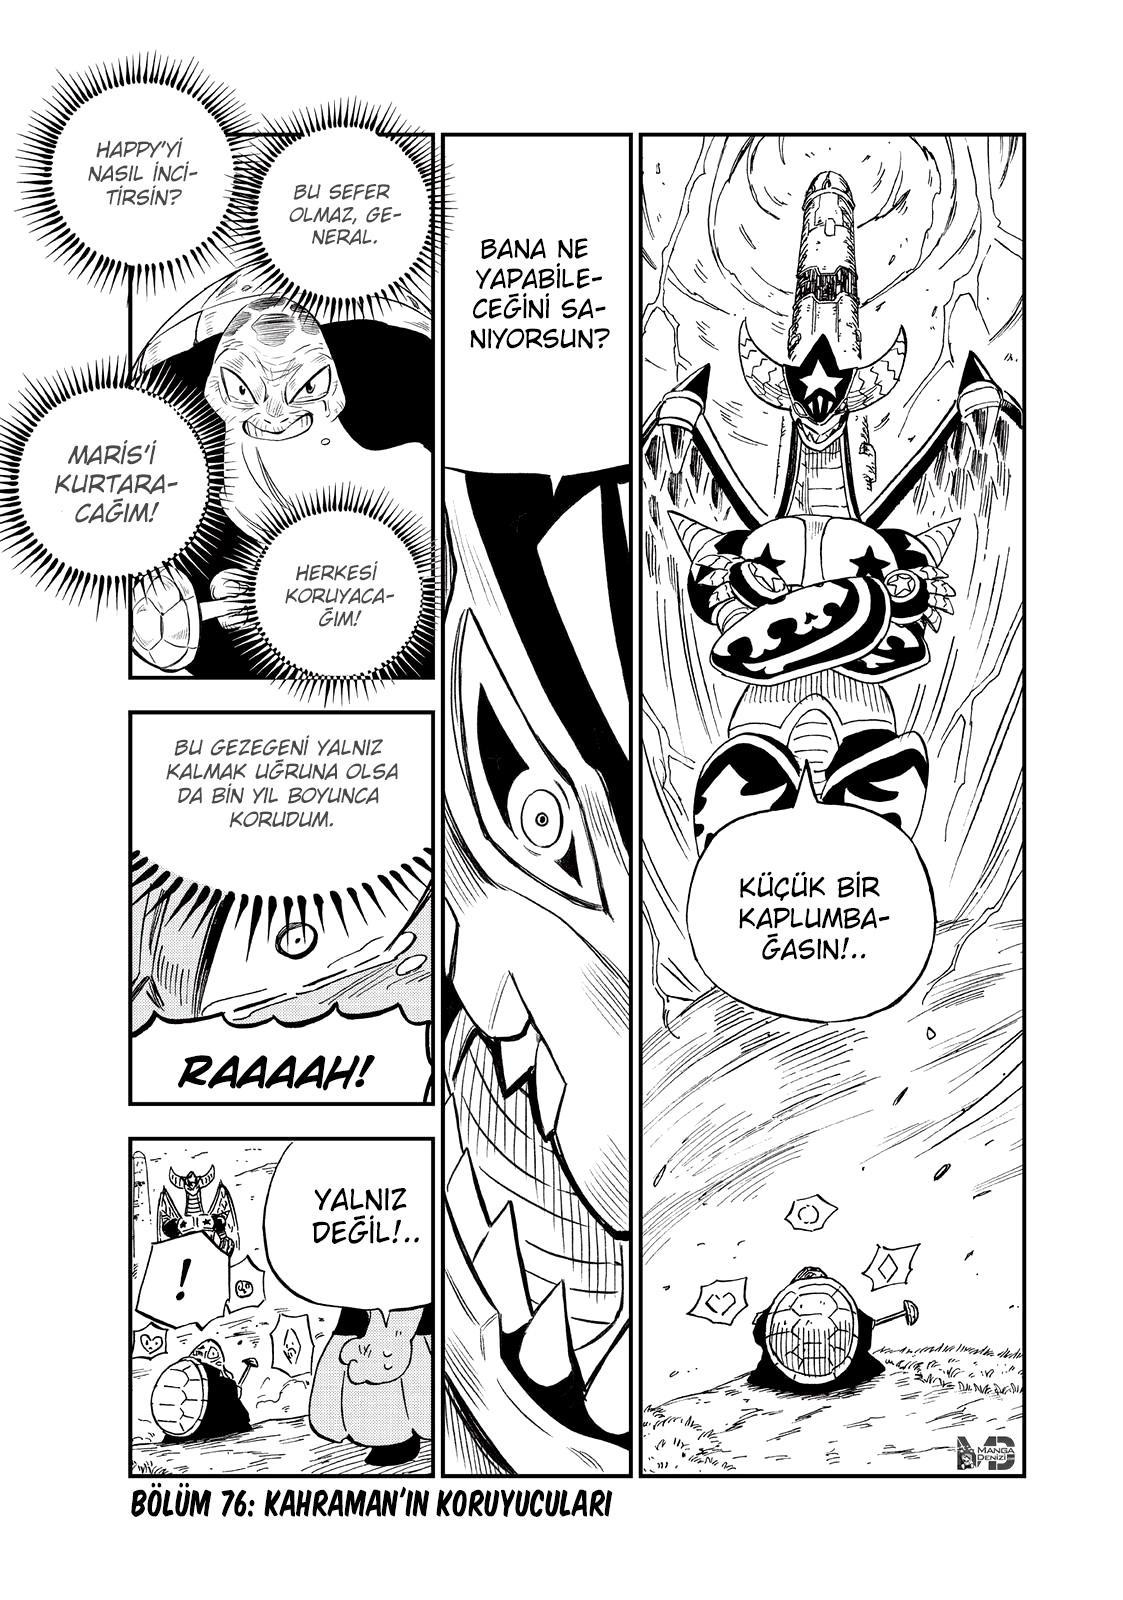 Fairy Tail: Happy's Great Adventure mangasının 76 bölümünün 2. sayfasını okuyorsunuz.